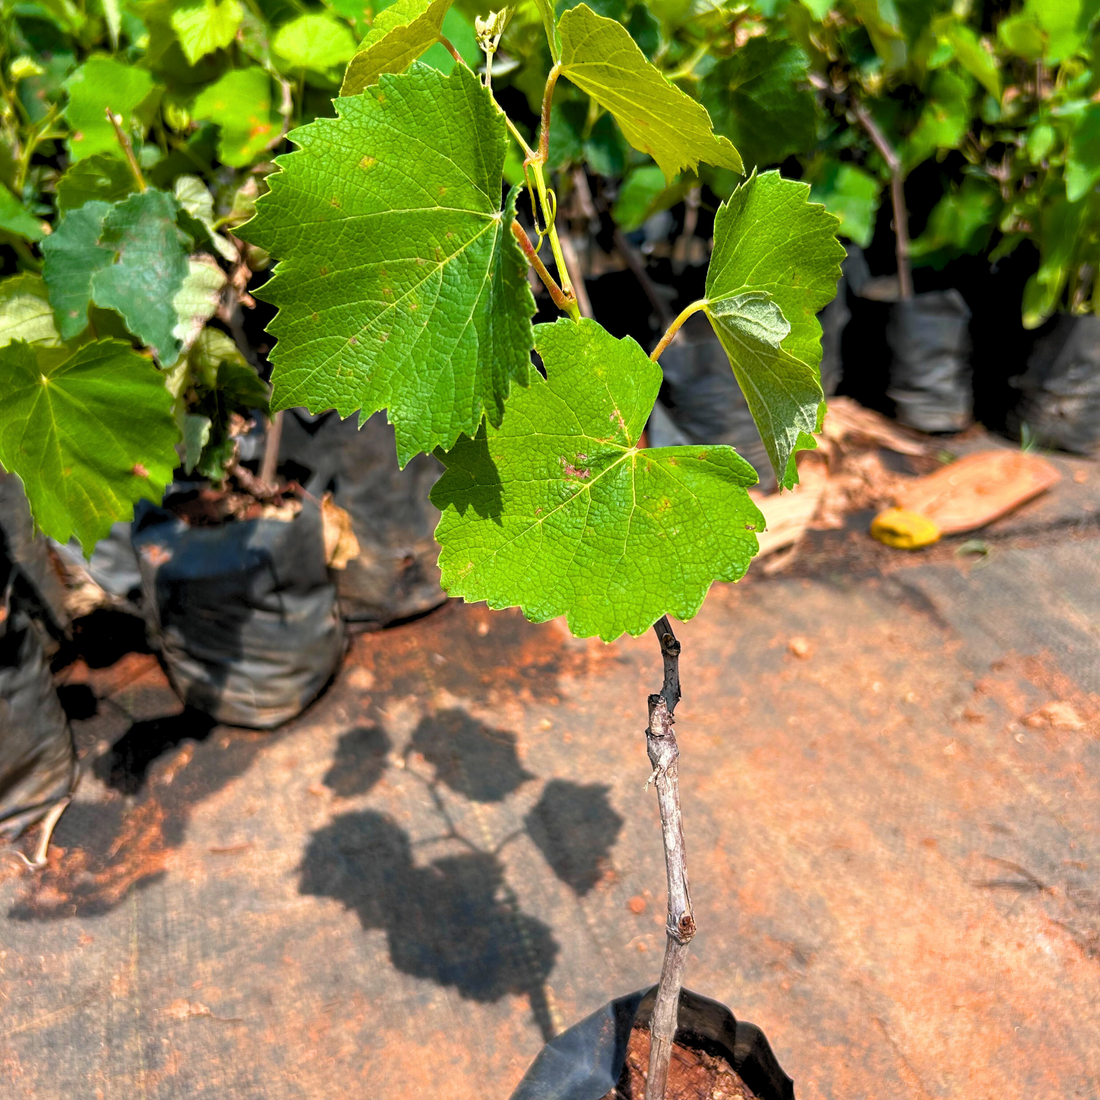 Black Grapes (Vitis vinifera) Fruit Live Plant